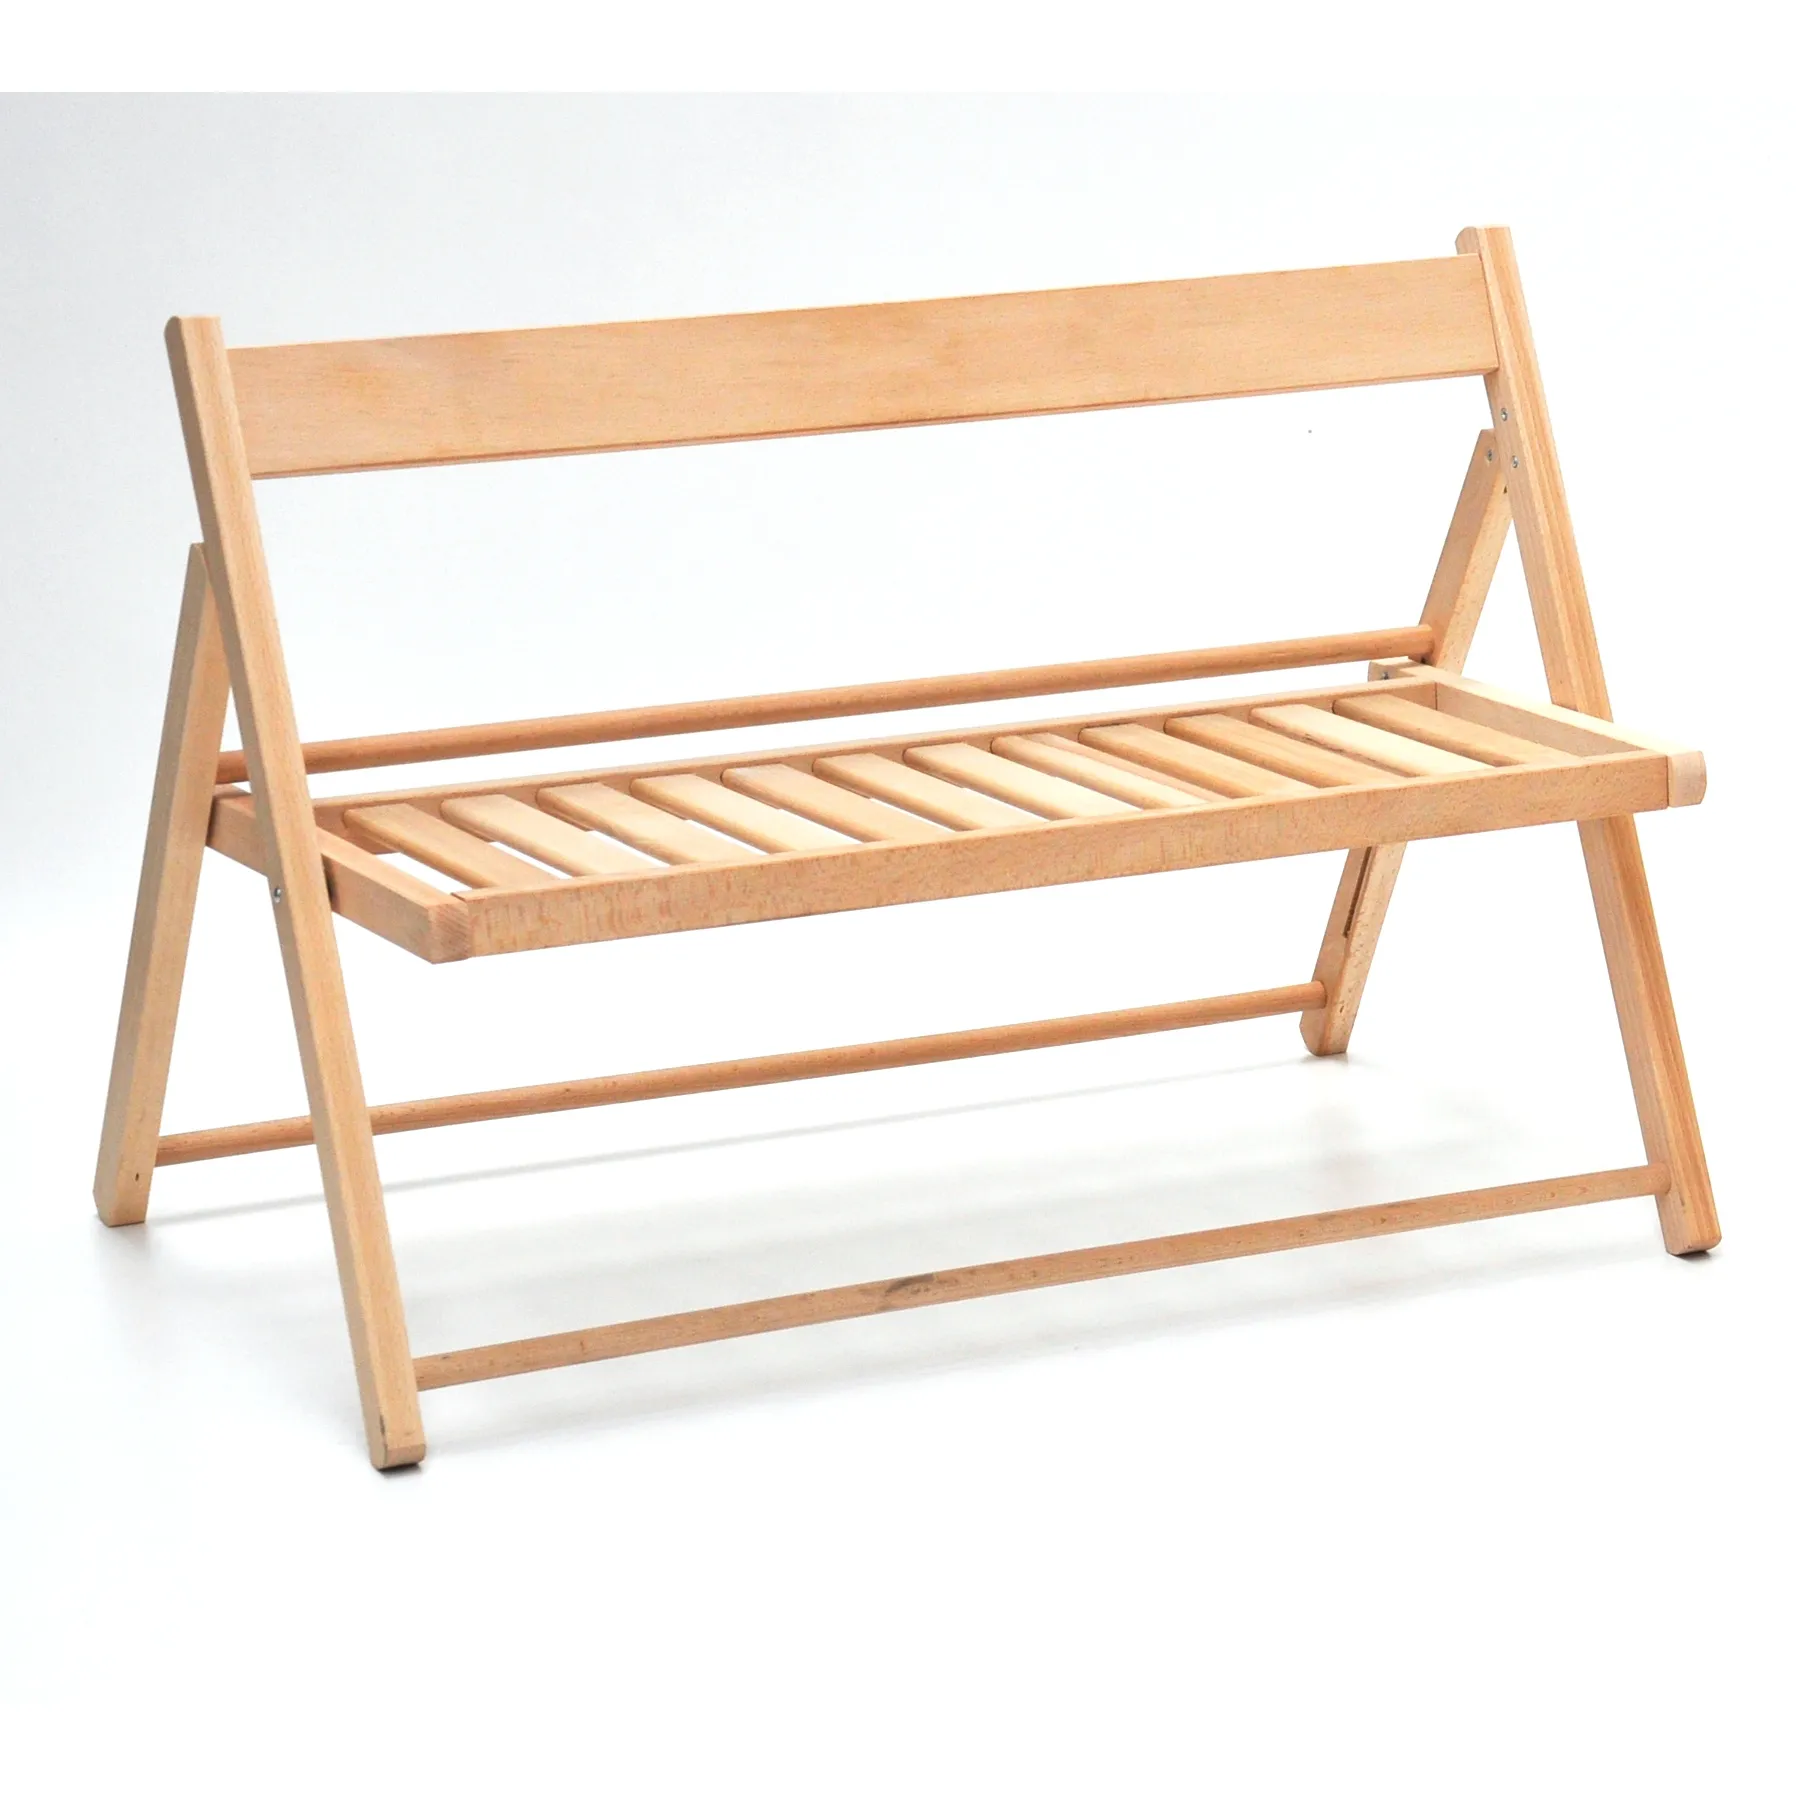 Panca in legno pieghevole italiana di alta qualità per bambini in legno di faggio naturale massiccio per uso interno ed esterno